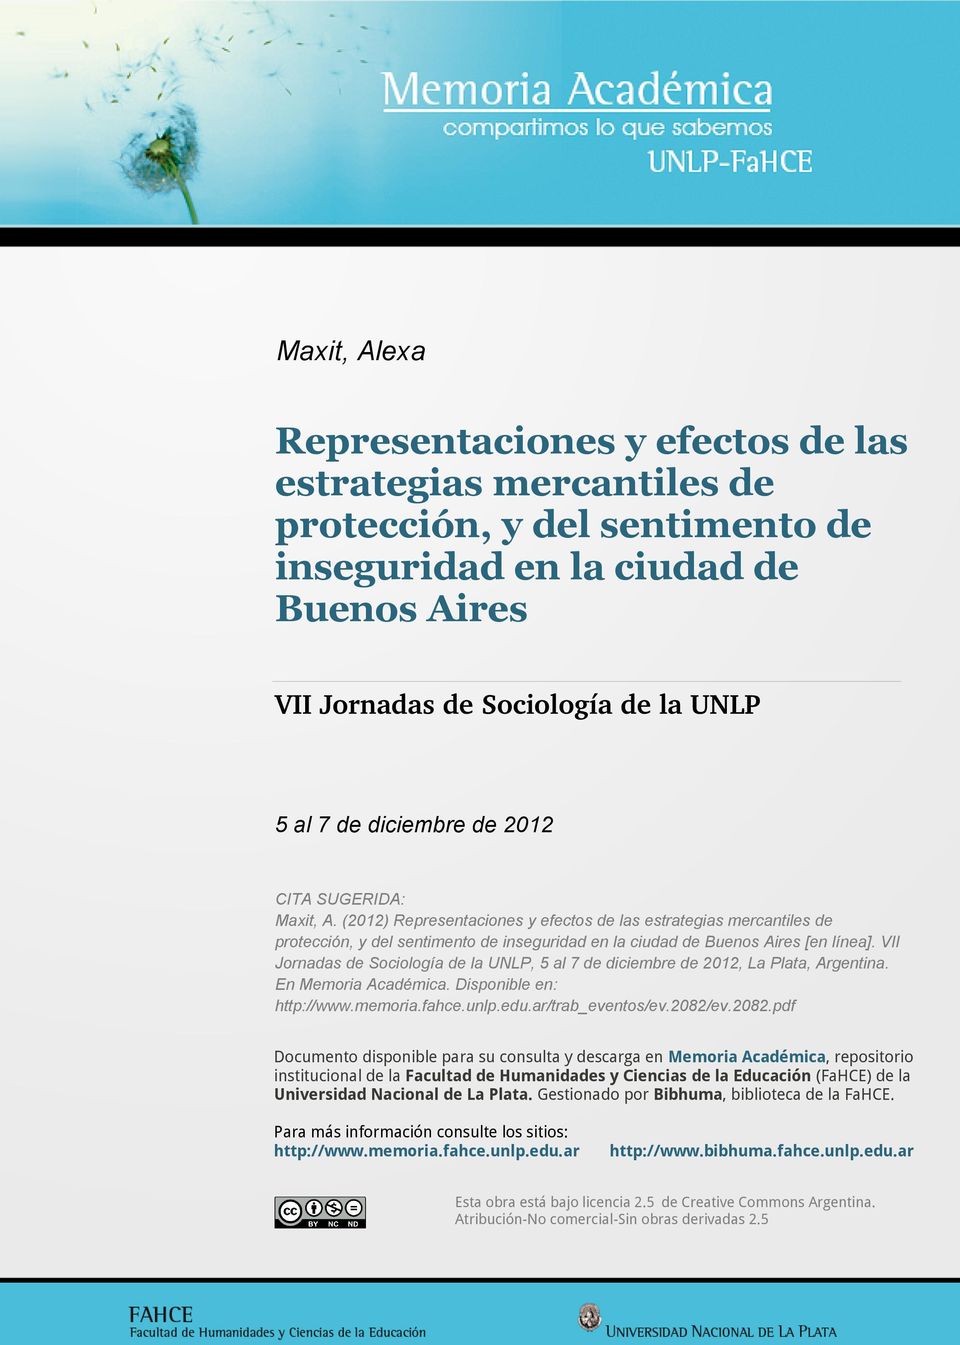 VII Jornadas de Sociología de la UNLP, 5 al 7 de diciembre de 2012, La Plata, Argentina. En Memoria Académica. Disponible en: http://www.memoria.fahce.unlp.edu.ar/trab_eventos/ev.2082/